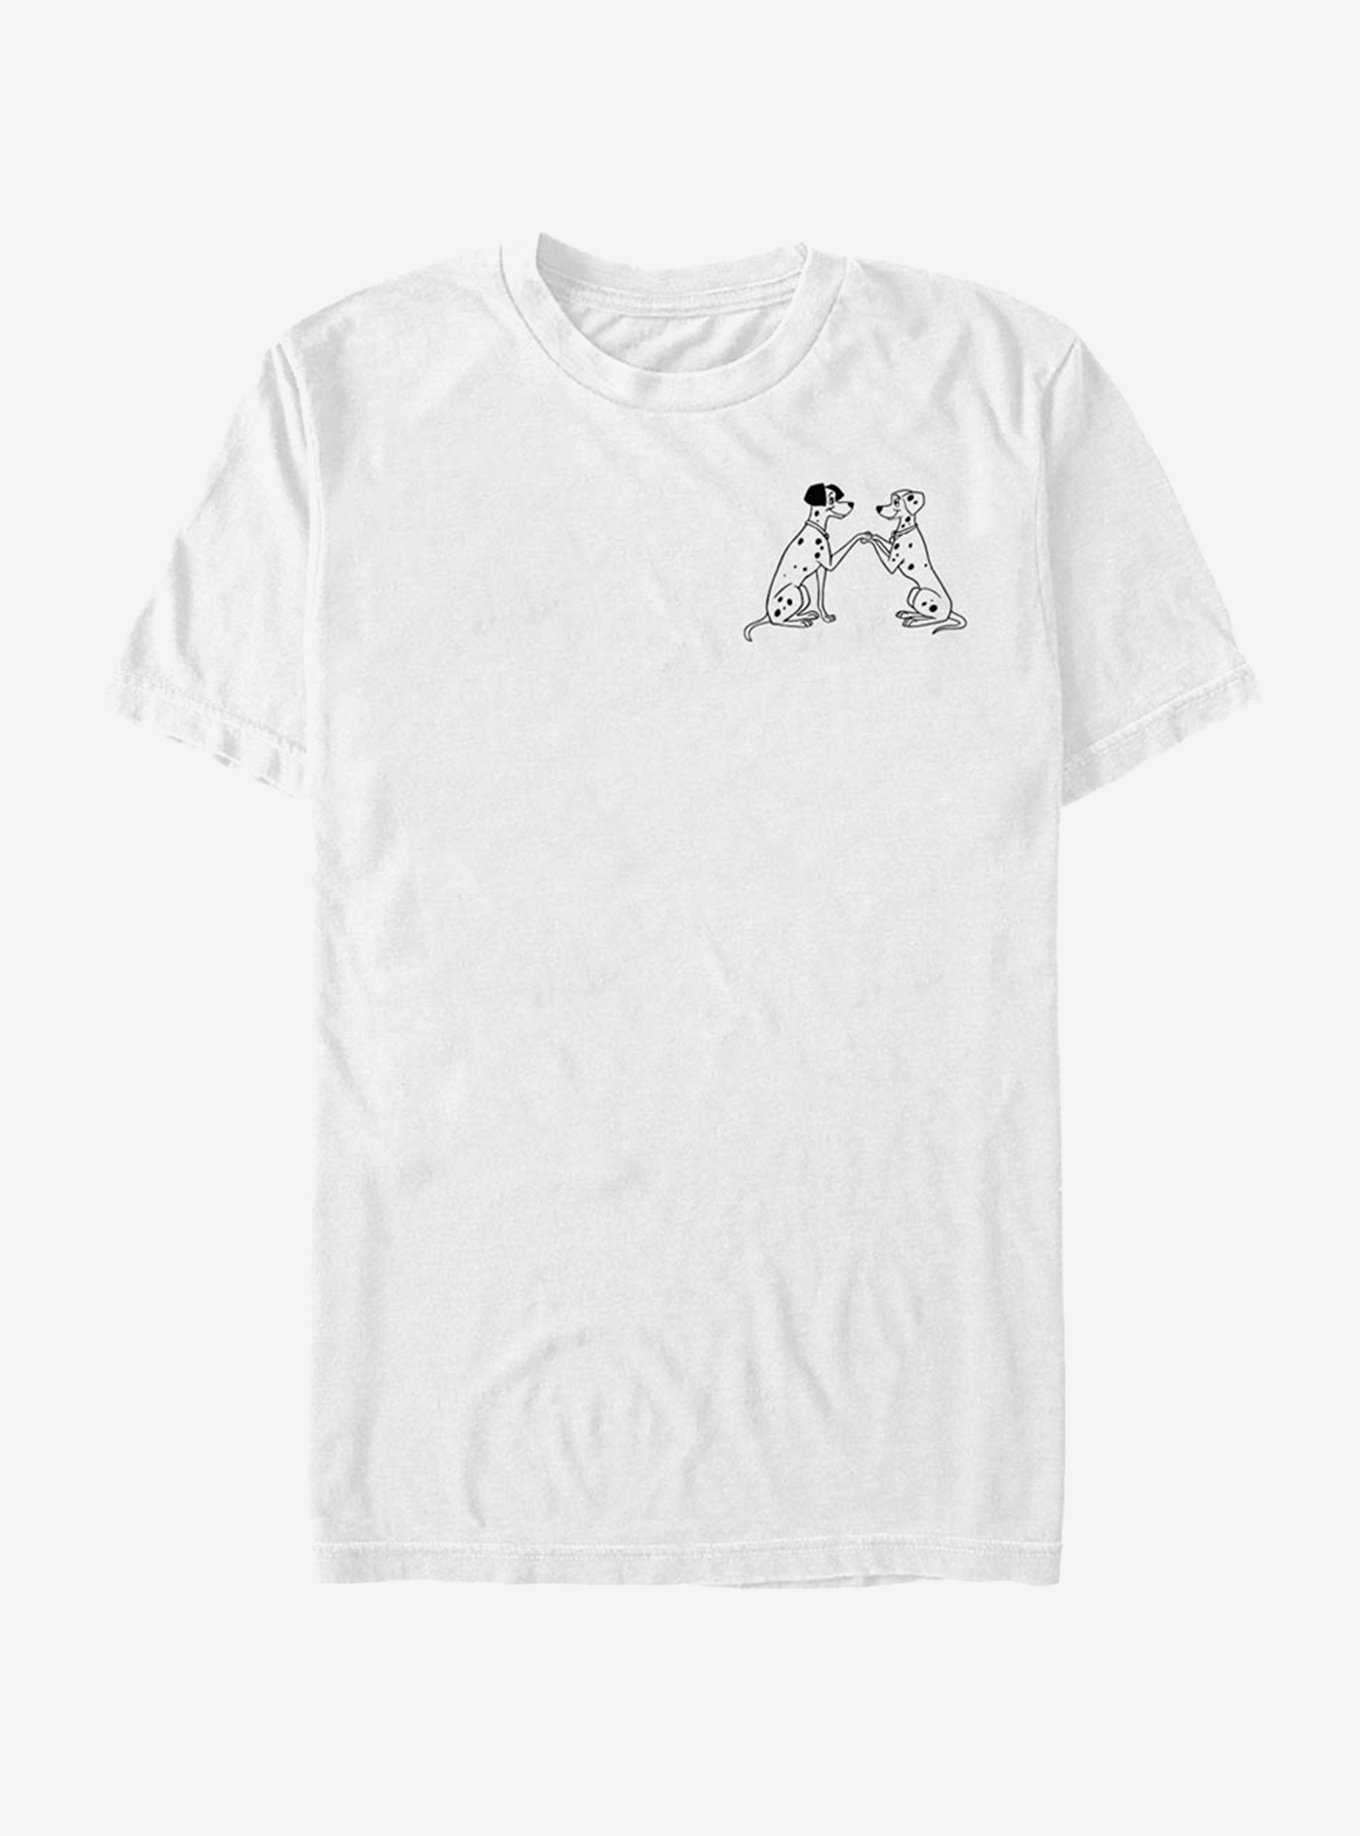 Disney 101 Dalmatians Pongo And Perdy Line T-Shirt, , hi-res